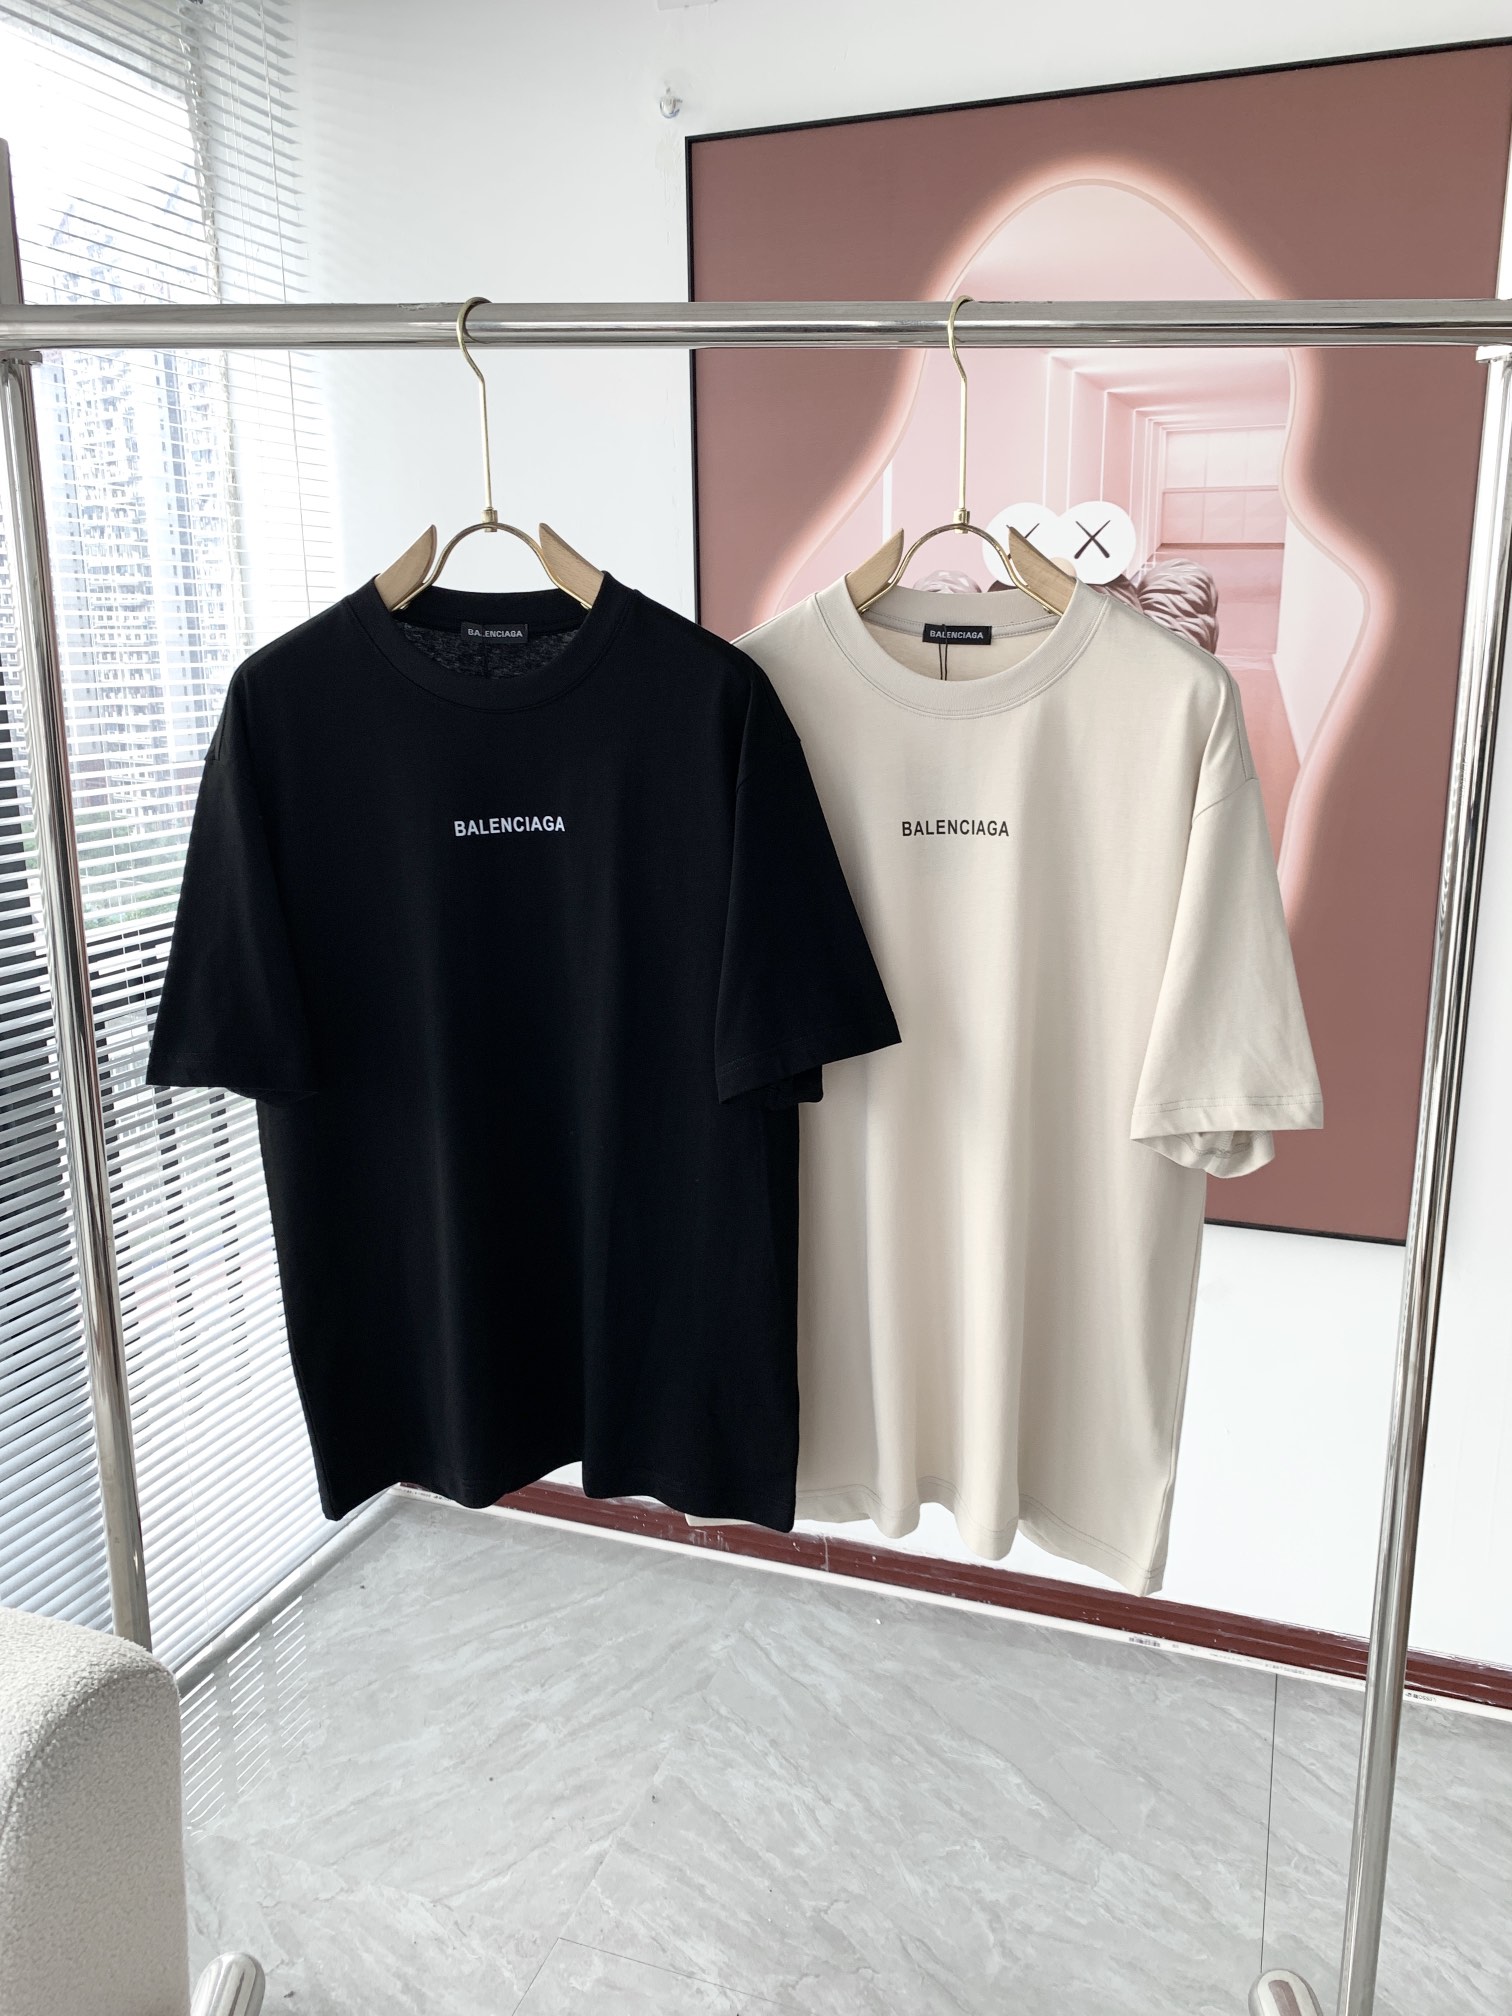 Balenciaga Clothing T-Shirt Unisex Cotton Spring/Summer Collection Short Sleeve